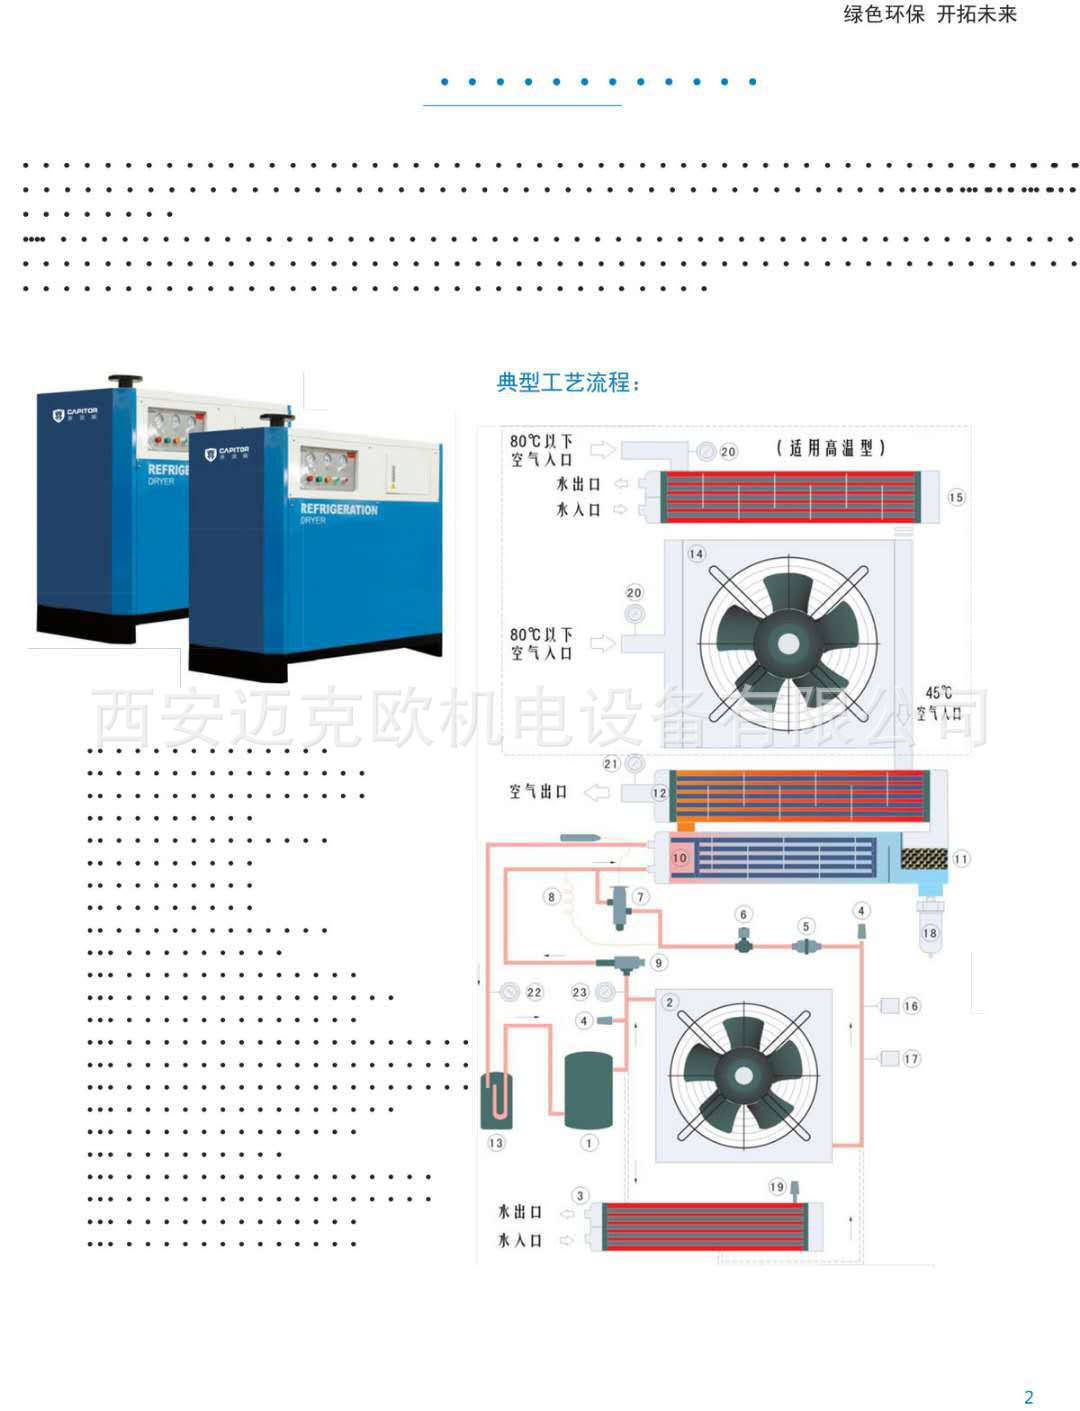 开贝拓冷干机、CFKA-250NH 、阿普达 38立方 风冷高温干燥机示例图3